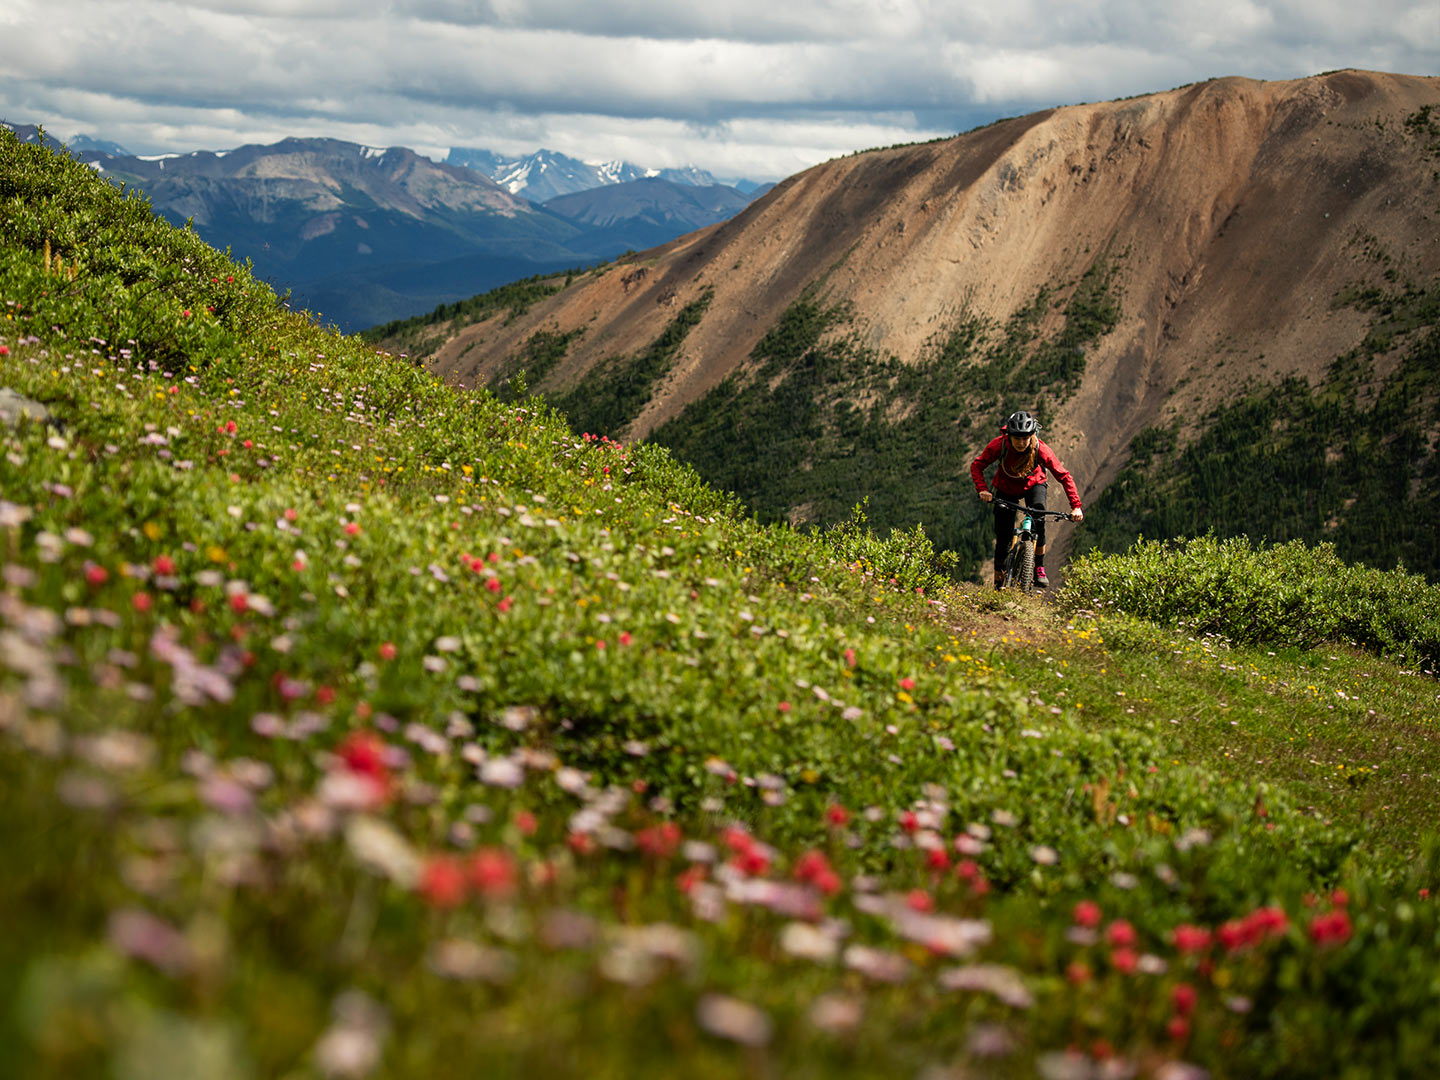 Biker stoupá po trailu posetém lučními květinami.